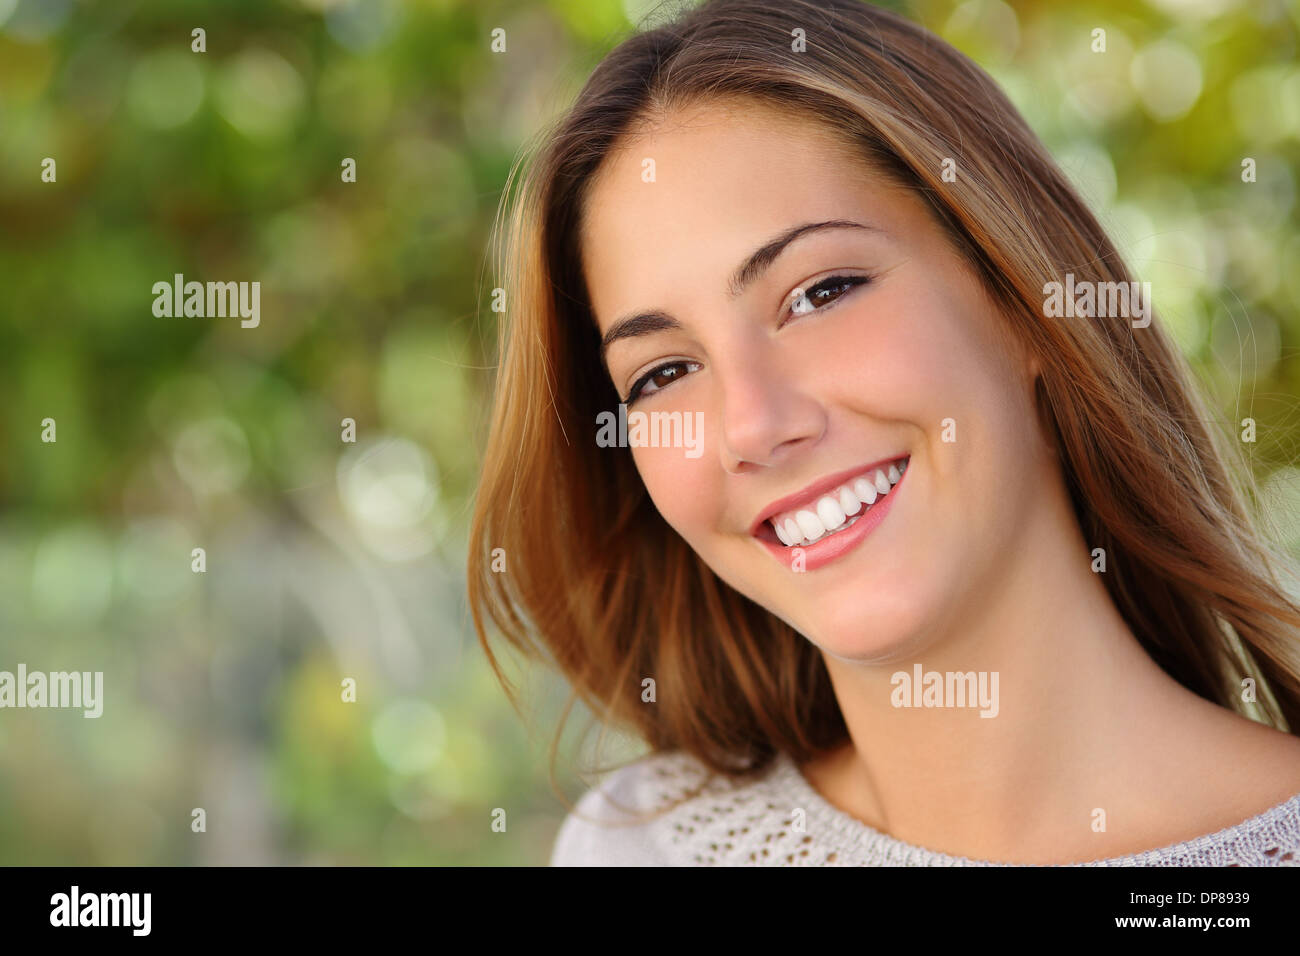 Bella donna bianca smile dental care concetto con uno sfondo verde Foto Stock